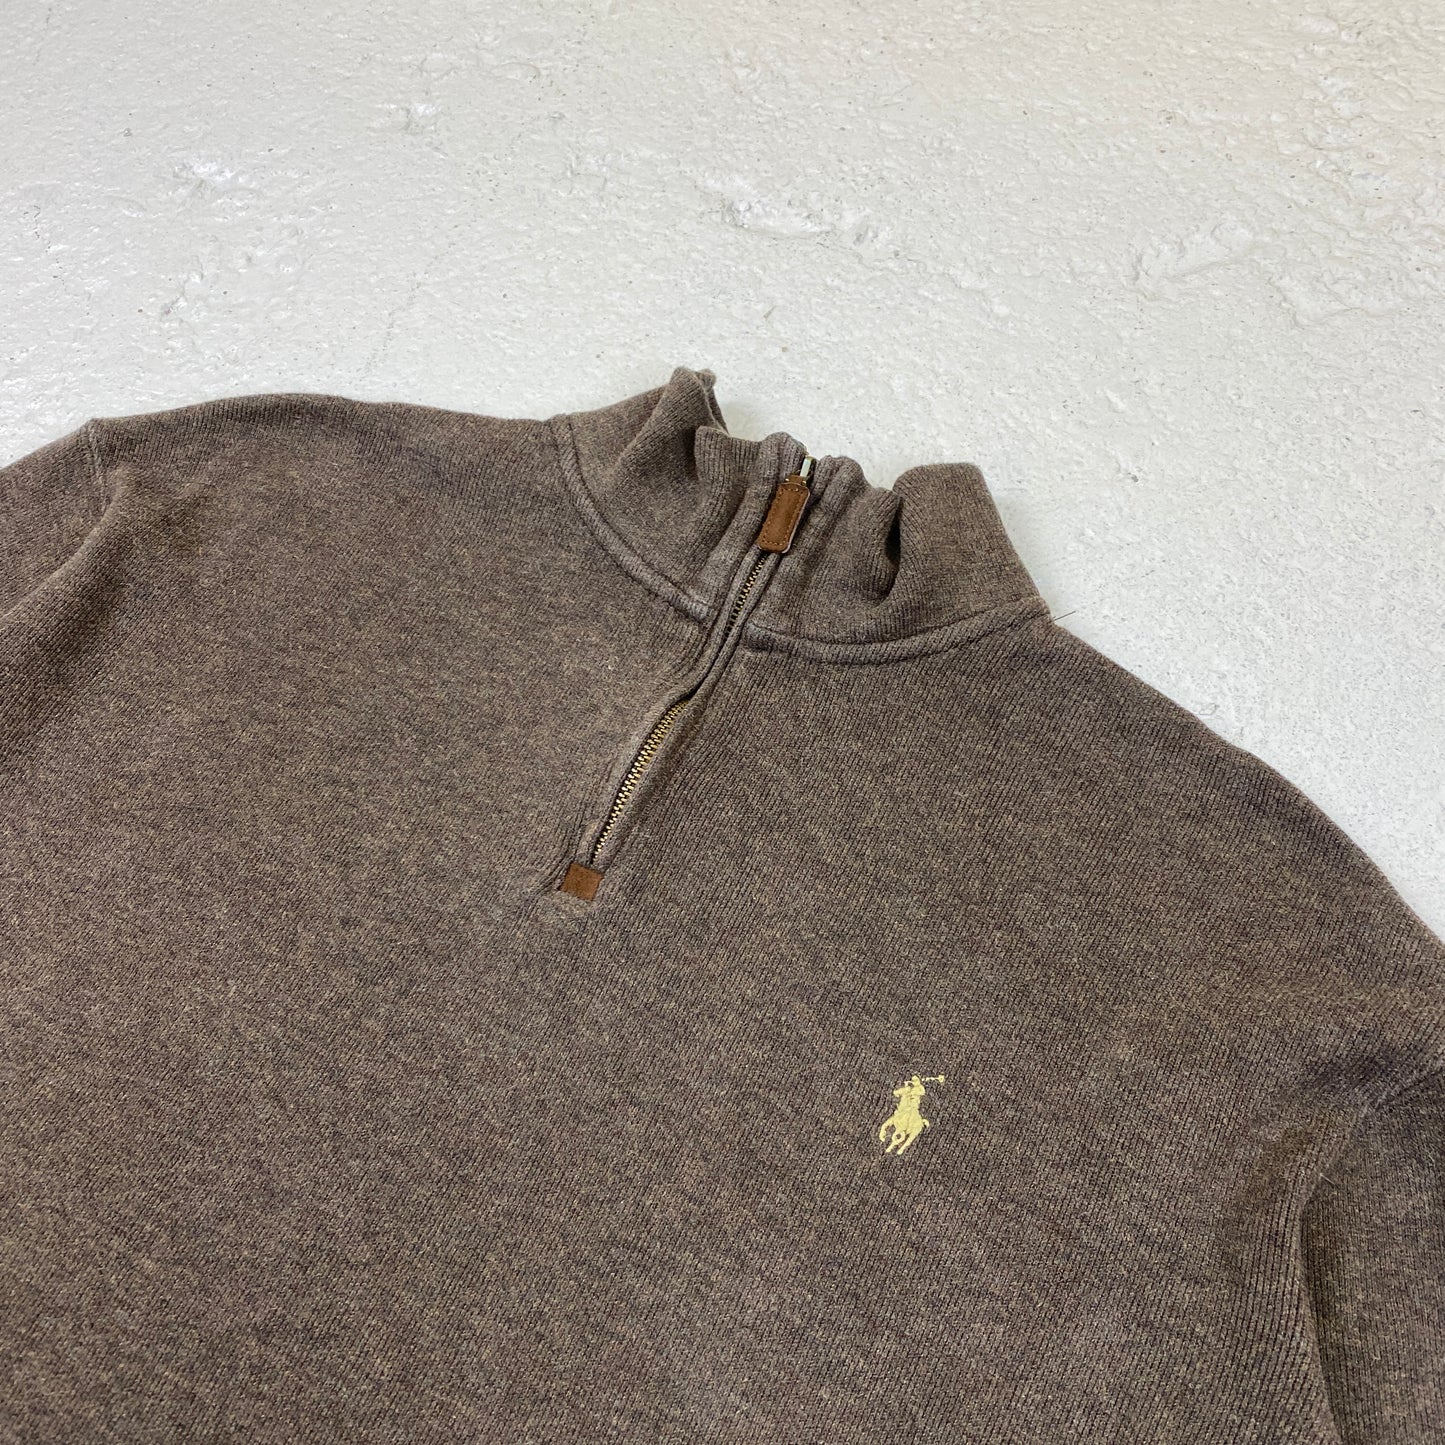 Polo Ralph Lauren 1/4 zip sweater (L-XL)